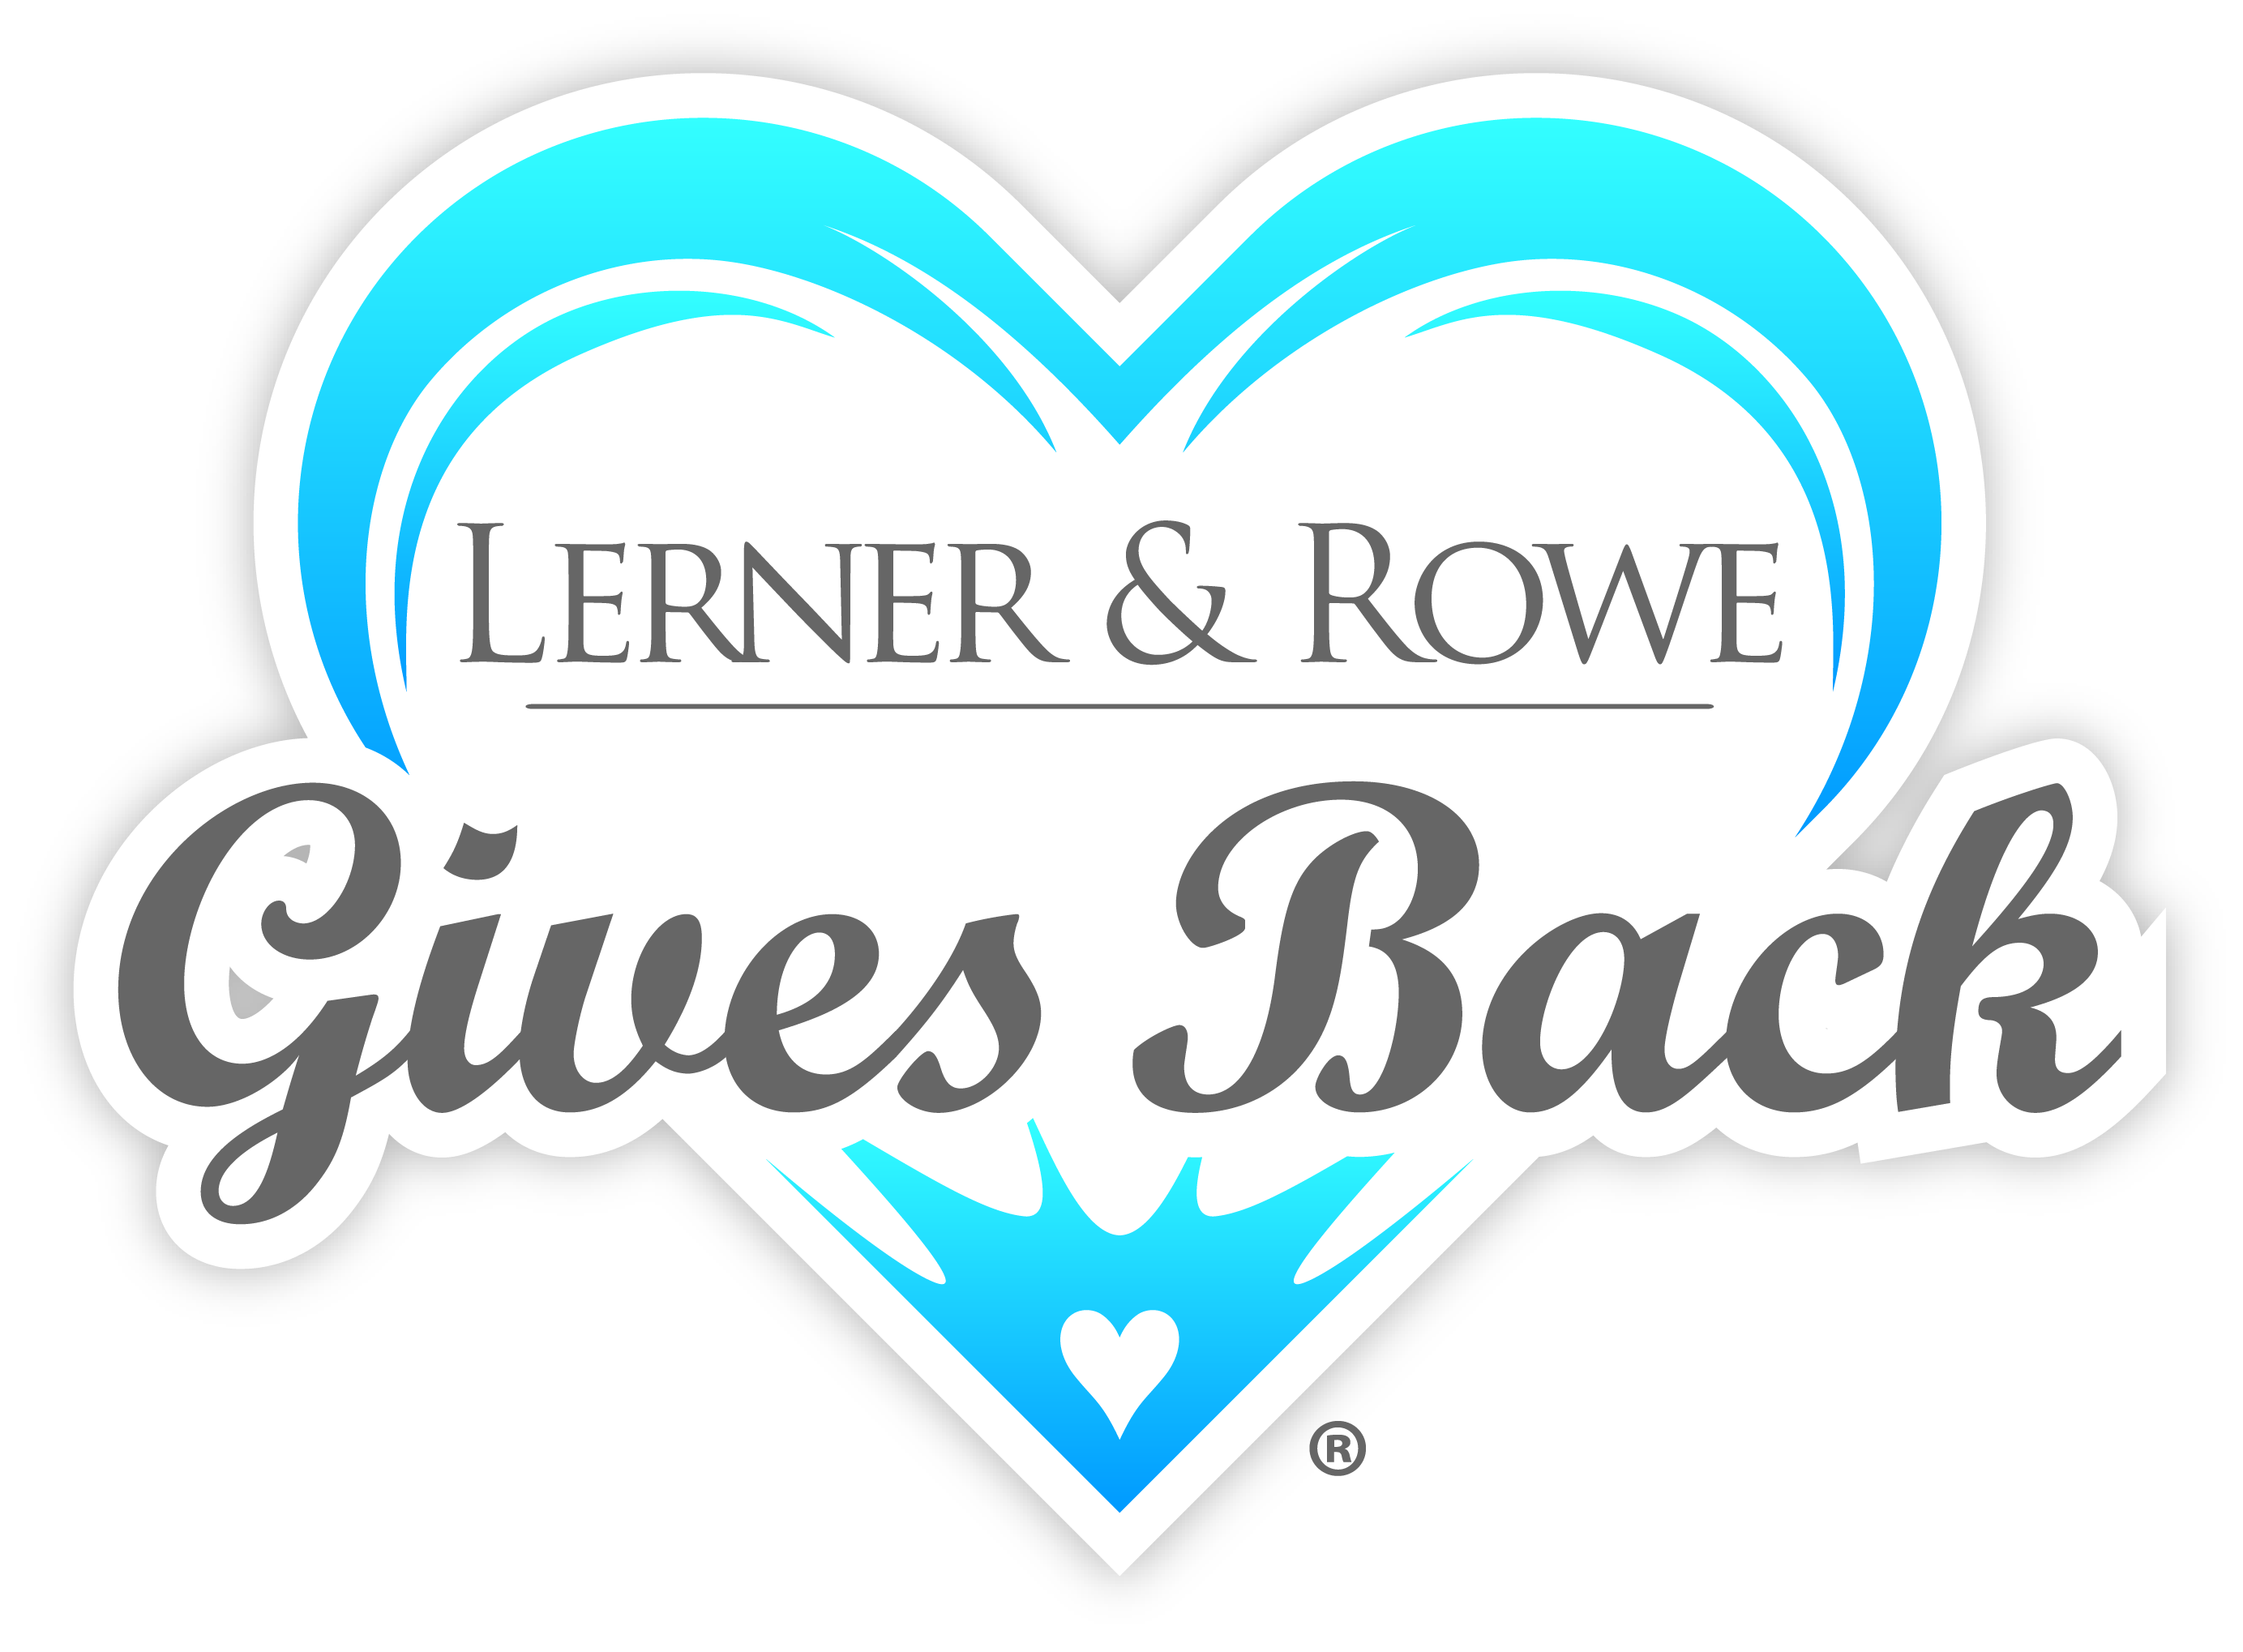 Lerner & Rowe Gives Back